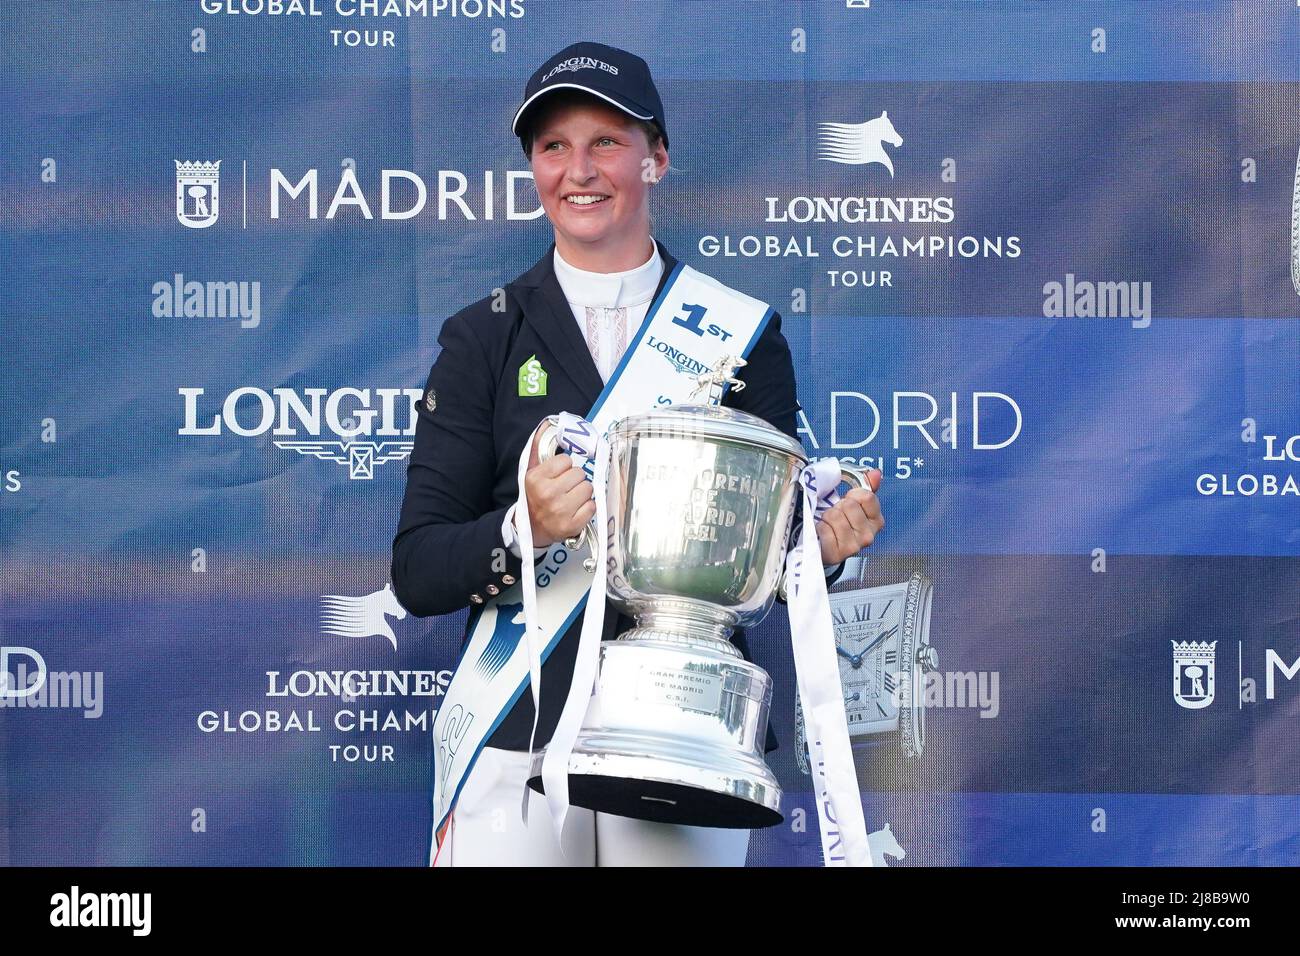 Madrid, España. 14th de mayo de 2022. Sanne Thijssen posará con un trofeo  durante el Gran Premio de Madrid del Tour Mundial de Campeones de Longines  en el Campeonato Global de Campeones